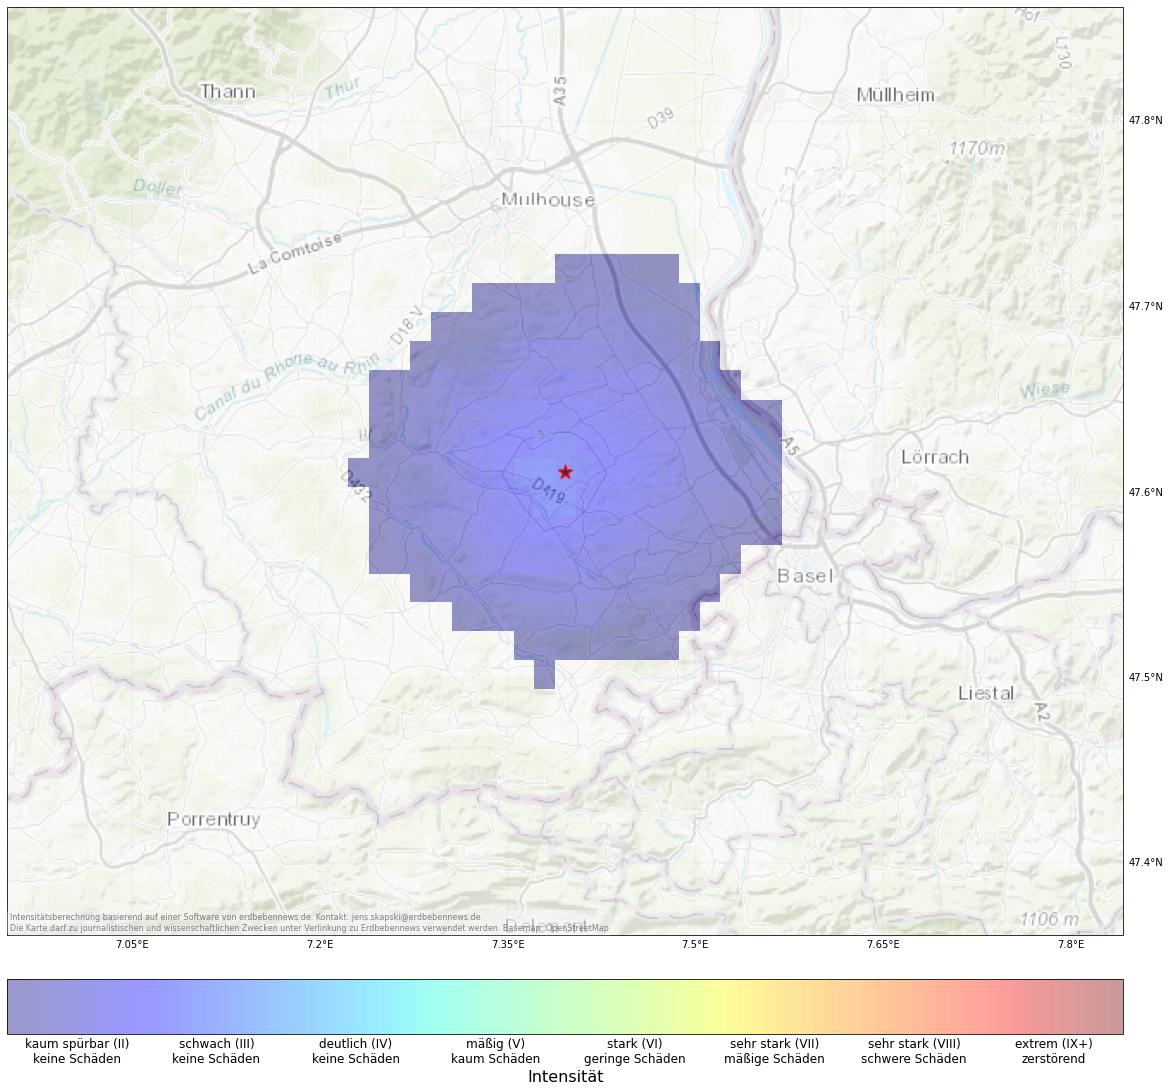 Berechnete Intensität (ShakeMap) des Erdbebens der Stärke 2.6 am 29. Dezember, 18:04 Uhr in Frankreich